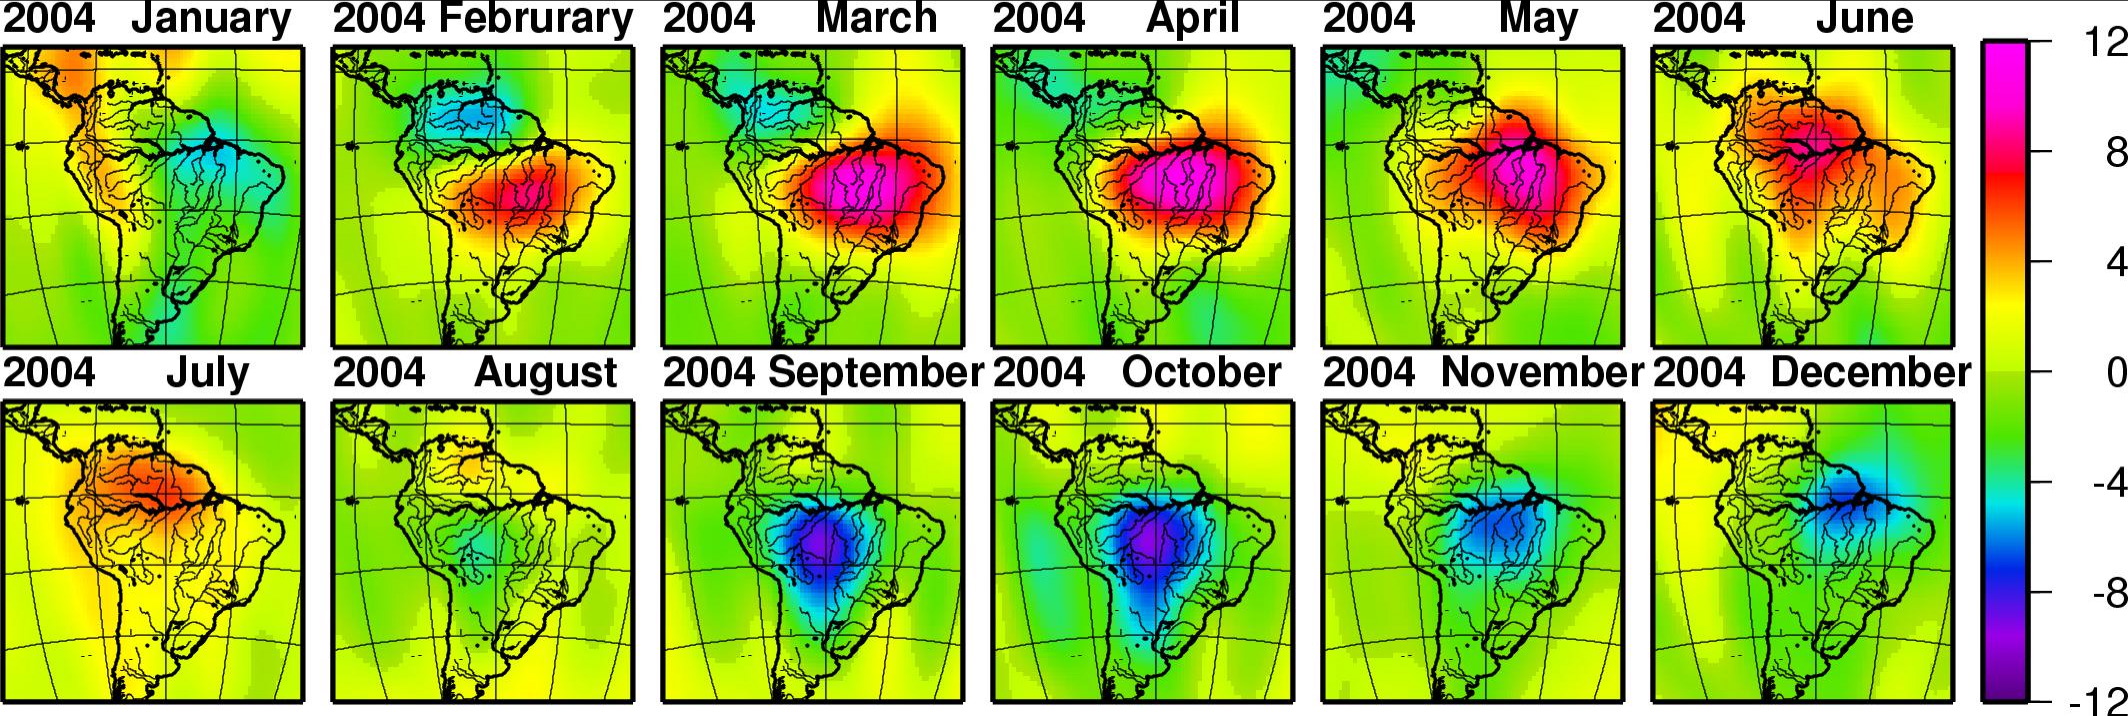 Amazon Basin seasonal hydrology